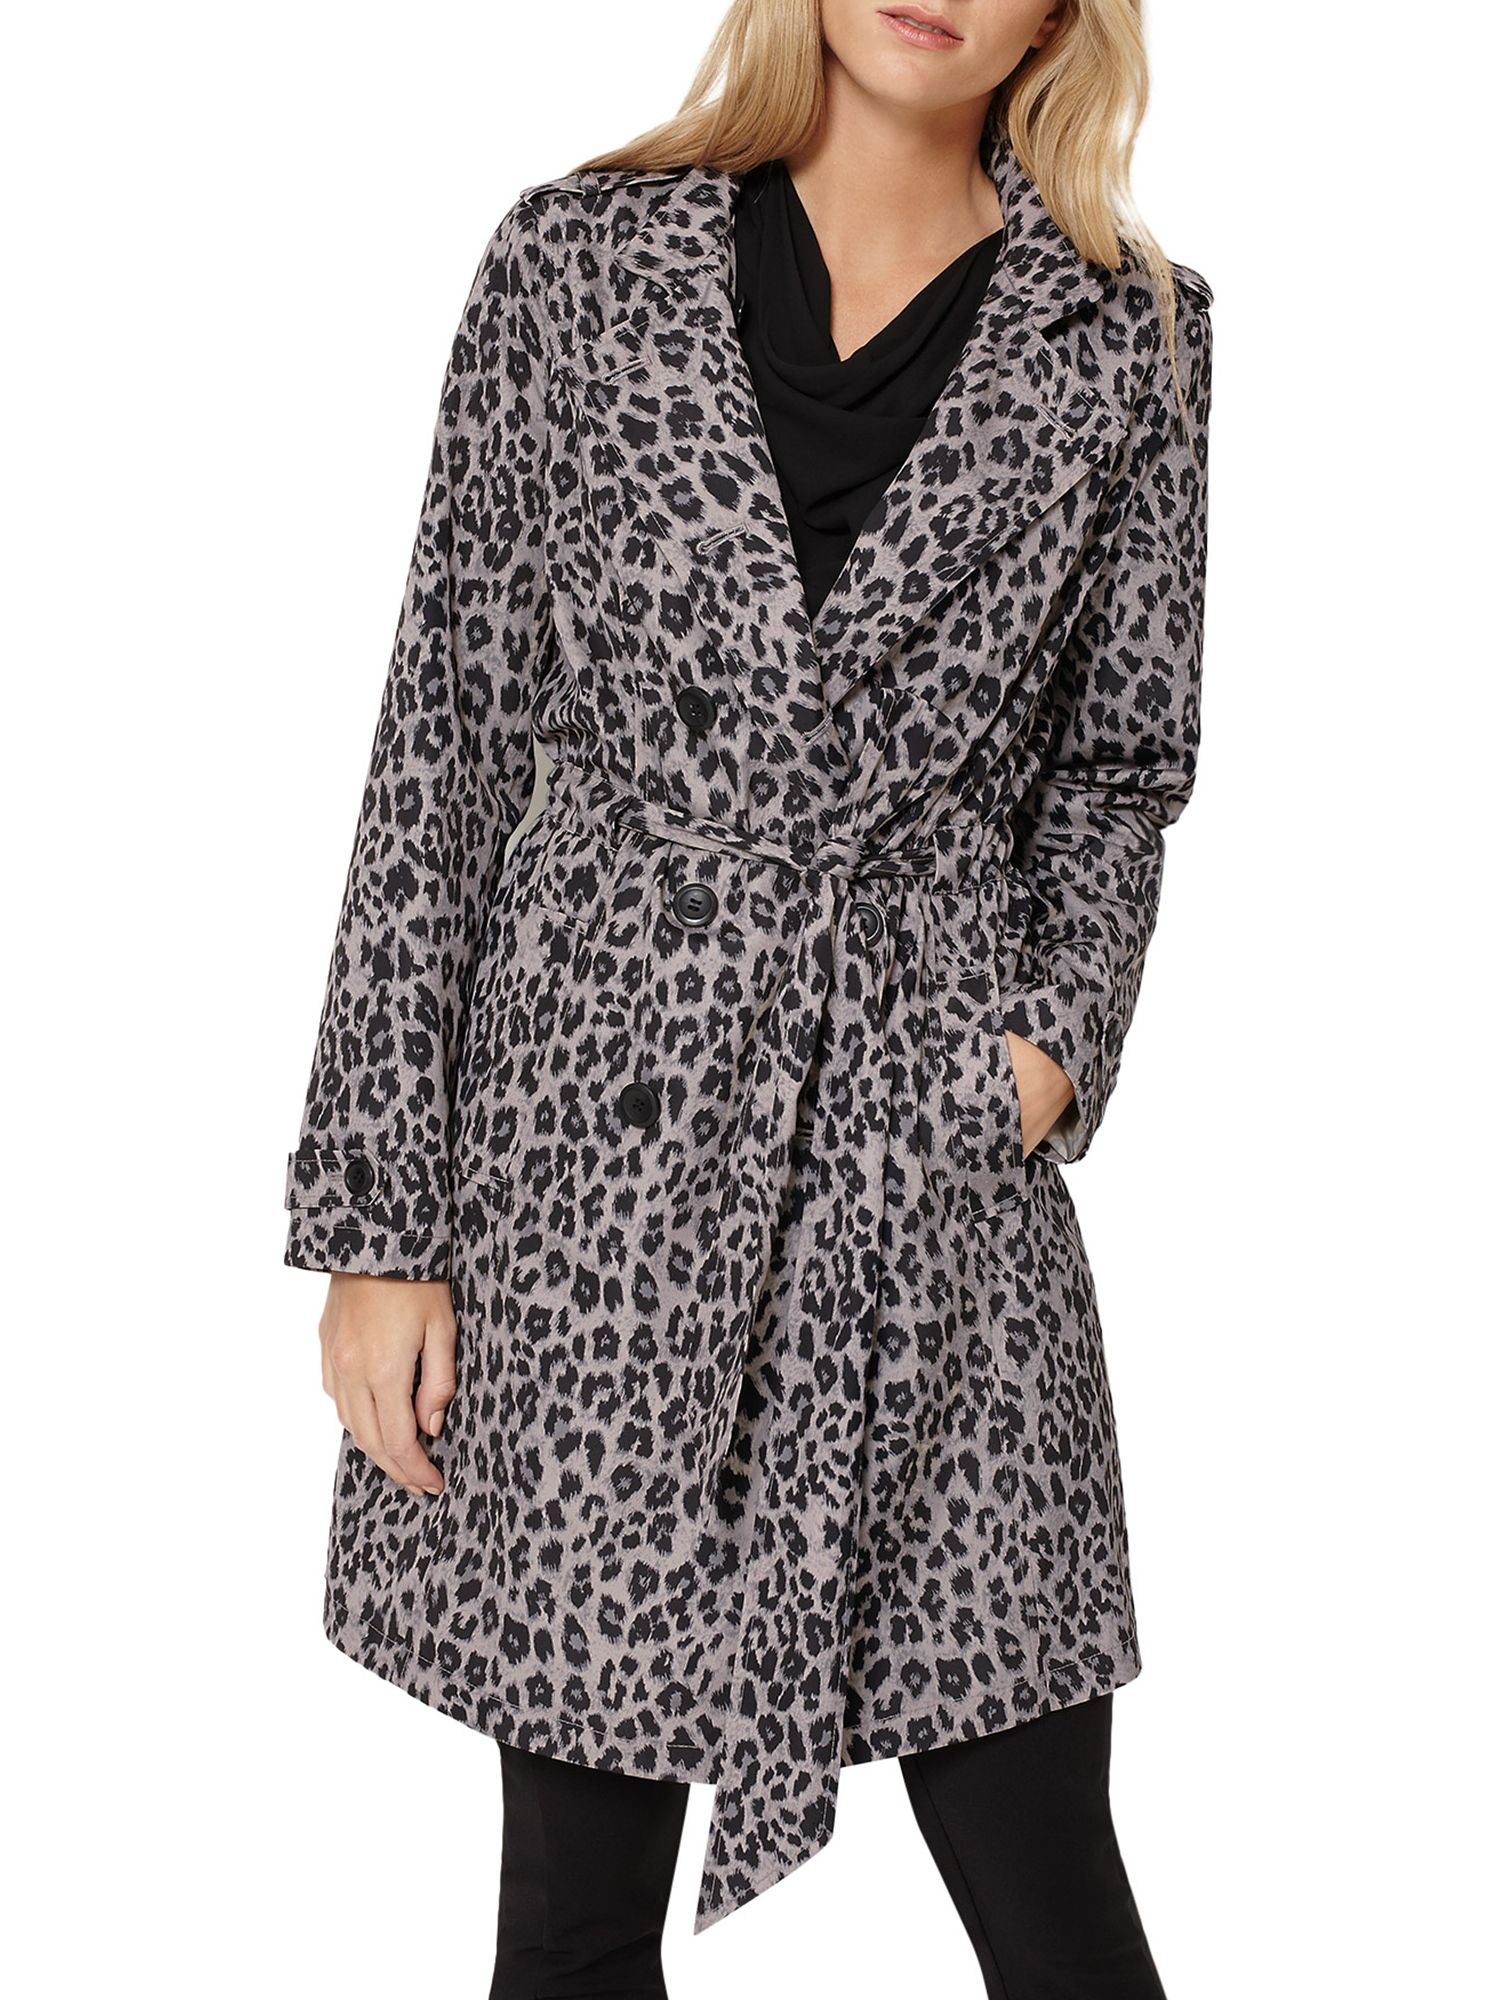 damsel in a dress leopard coat